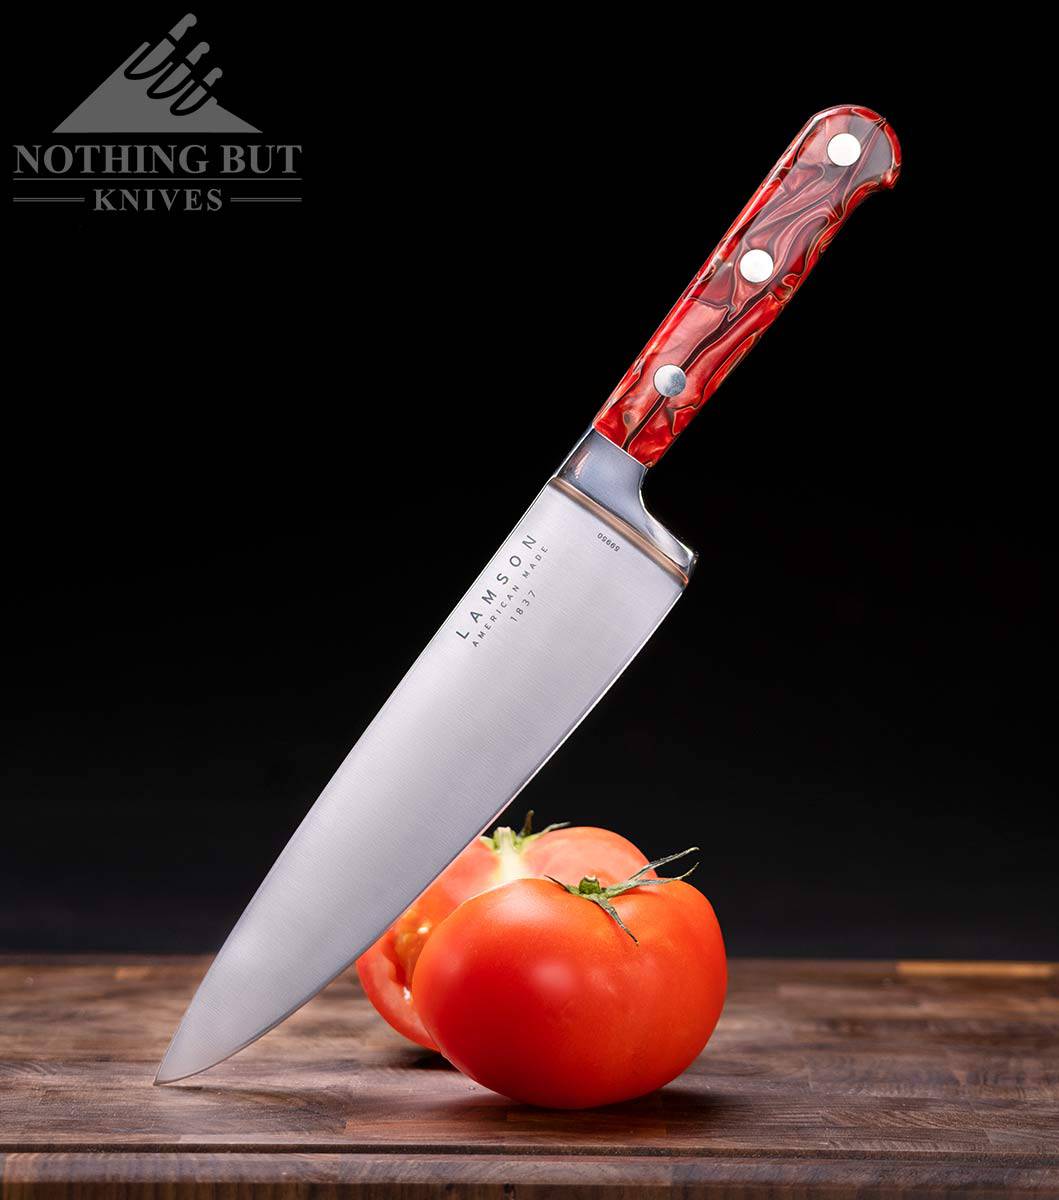 https://www.nothingbutknives.com/wp-content/uploads/2021/07/Lamson-Premier-Chef-Knife-Review.jpg